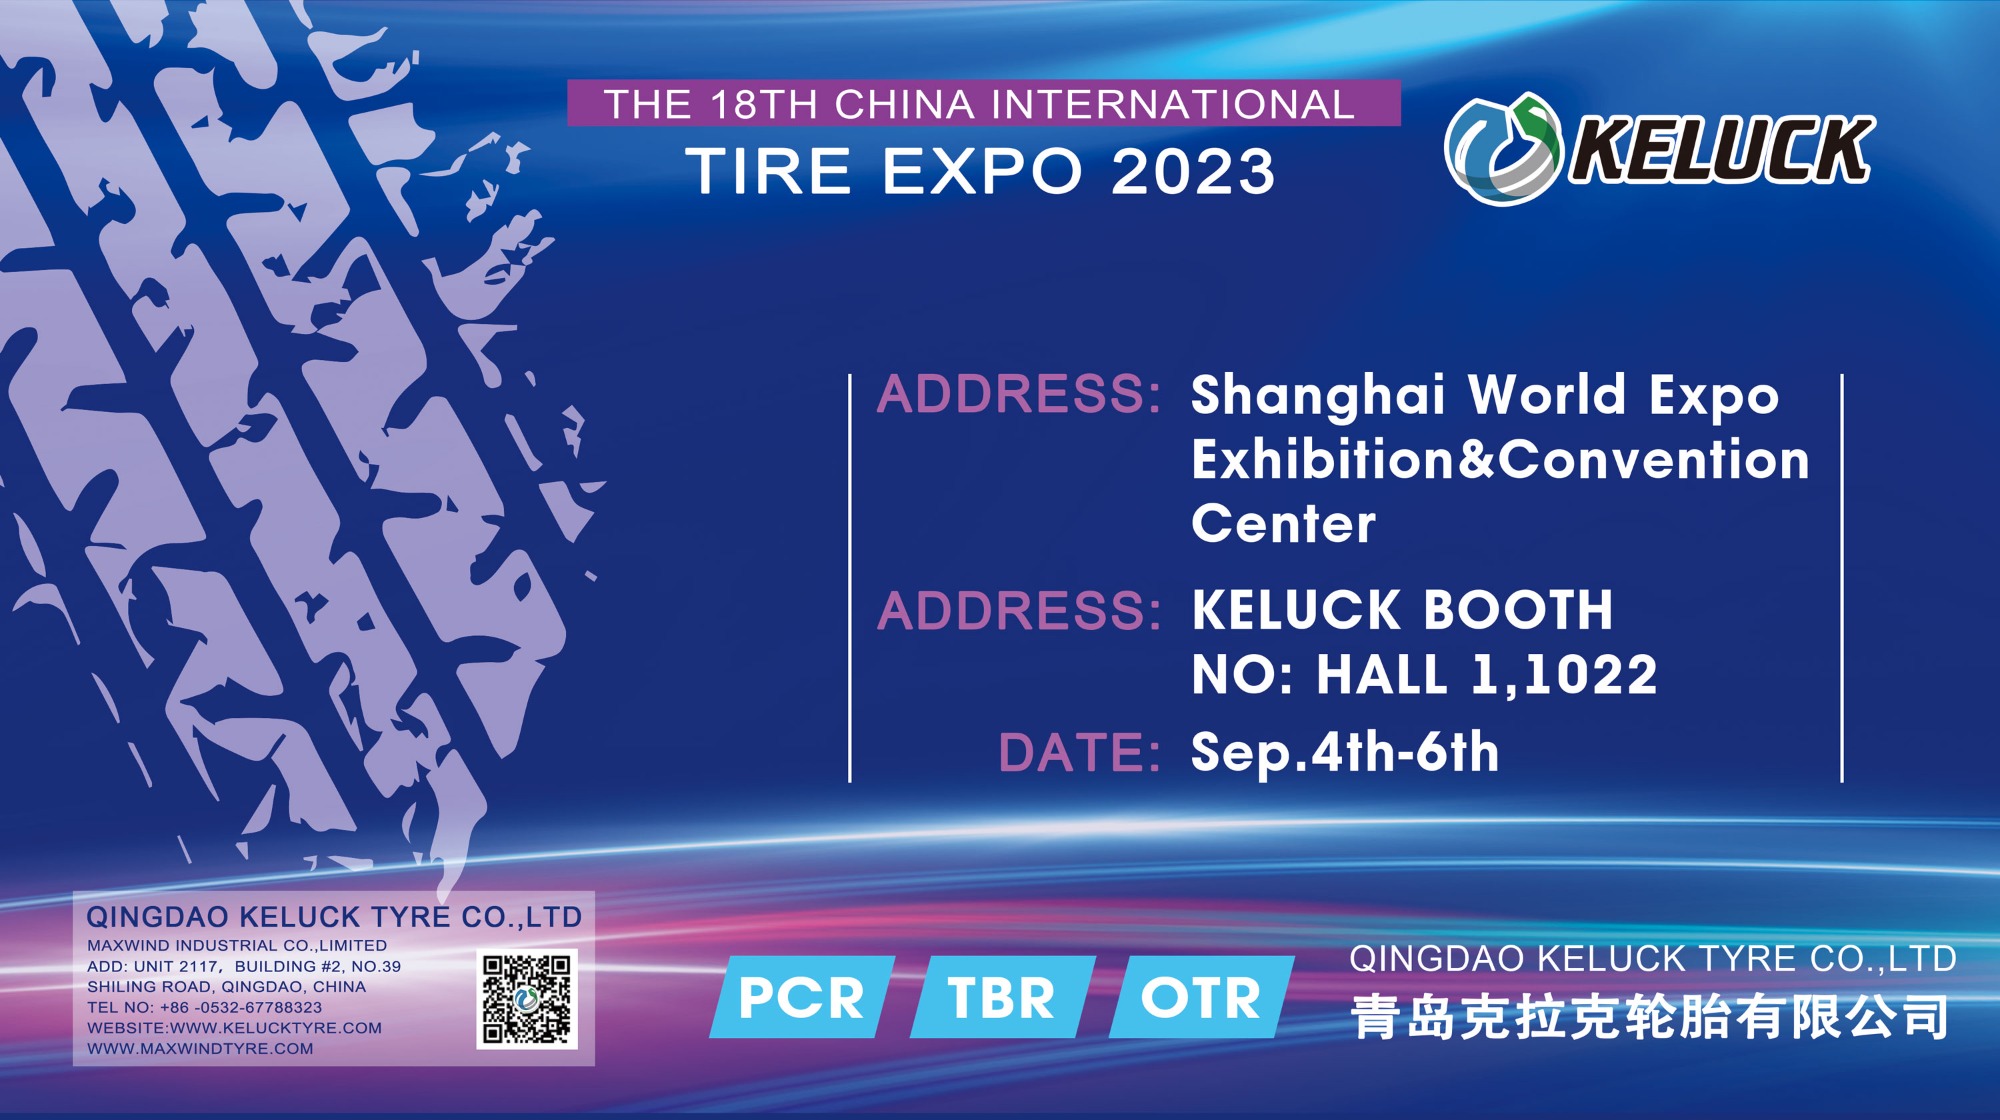 KELUCK asistirá a la 18.a Exposición Internacional de Neumáticos y Bujes de China 2023